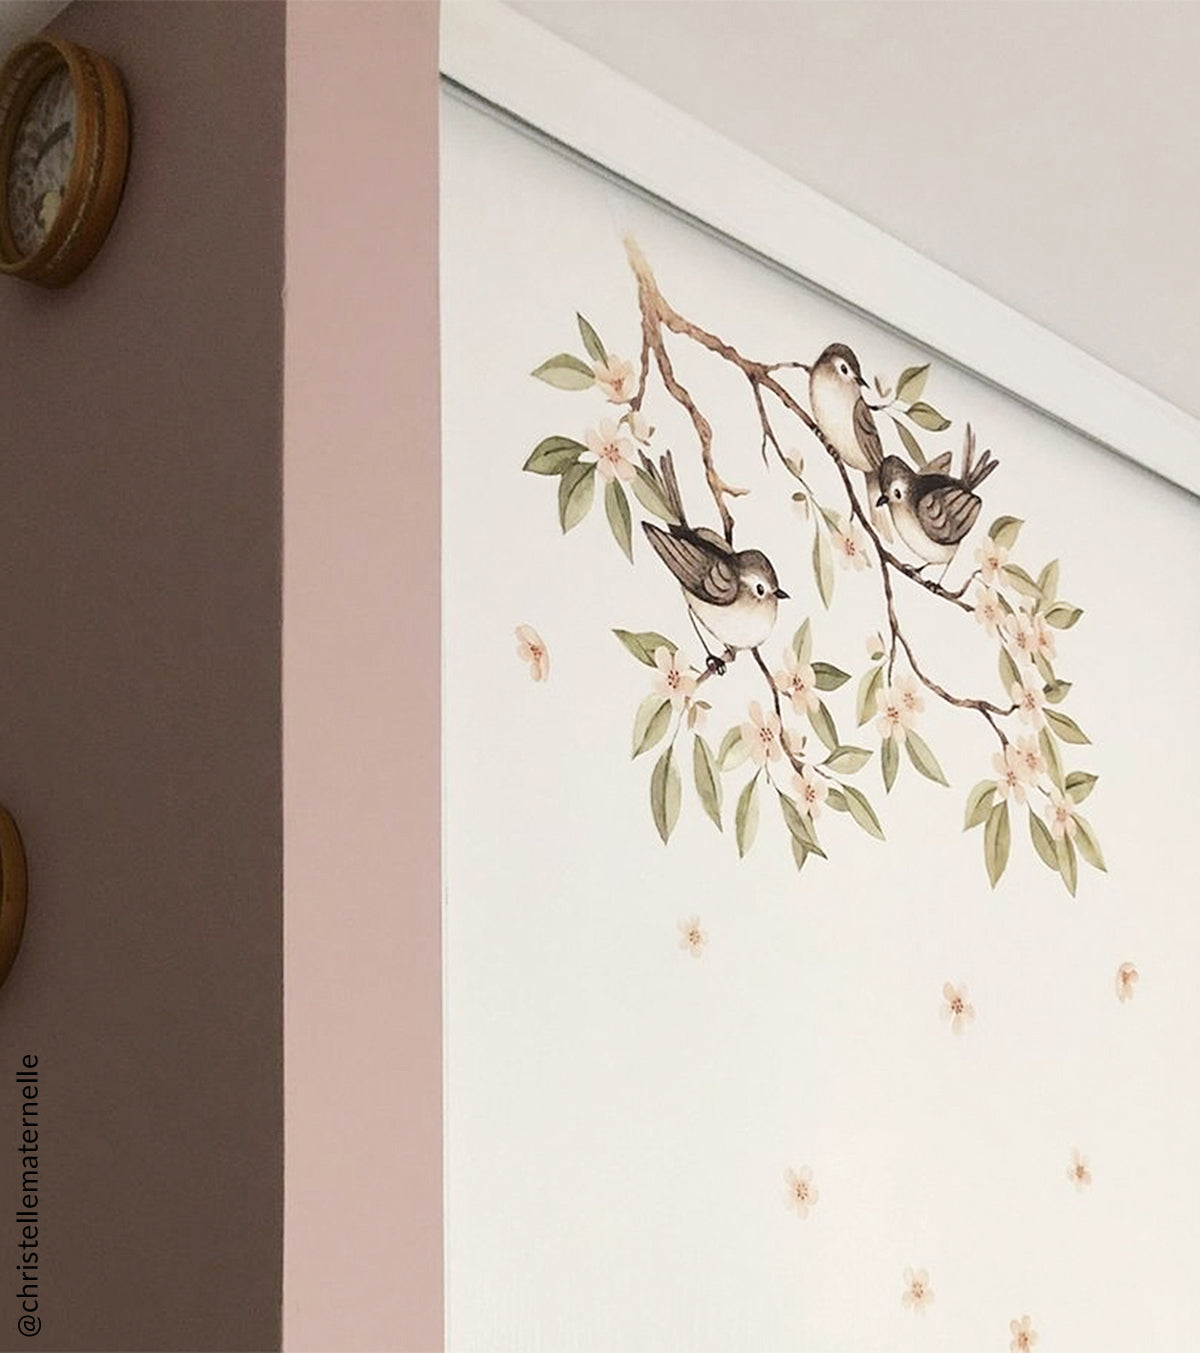 OH DEER - Wall decals murals - Flowering branch and birds